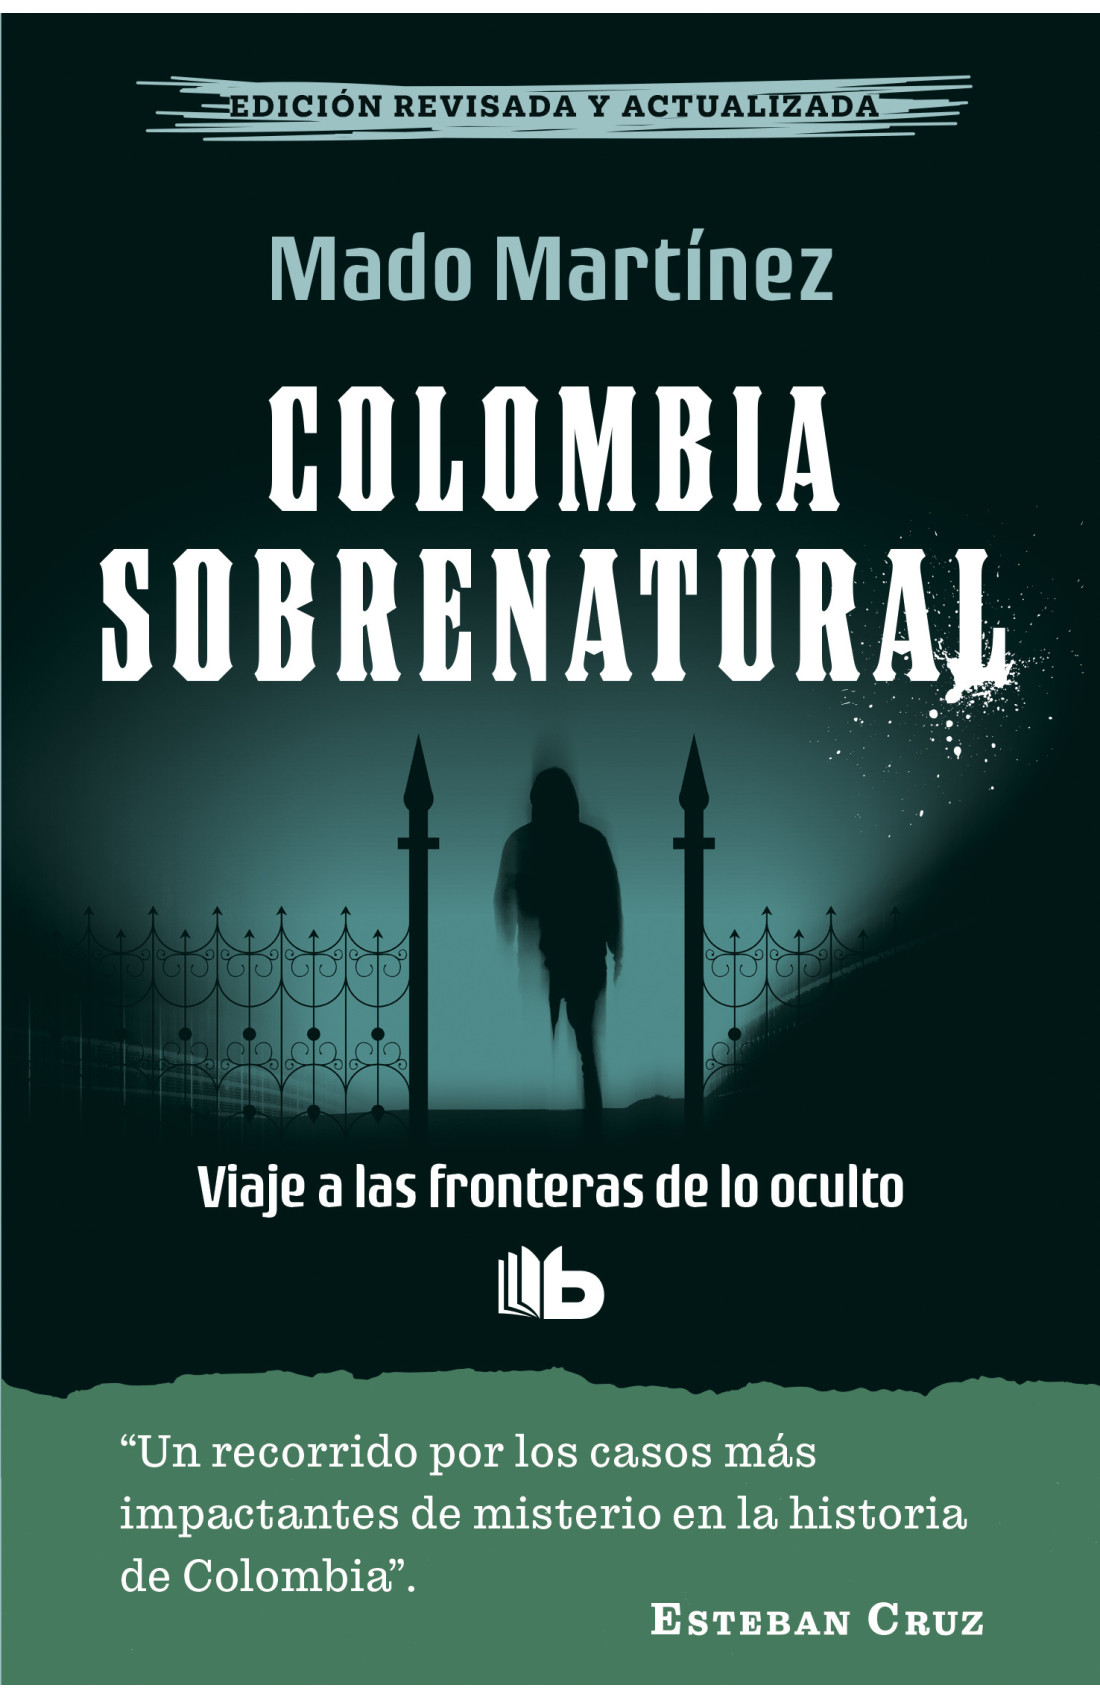 Portada de la nueva edición del libro "Colombia sobrenatural", de Mado Martínez. Cortesía: Penguin Random House.